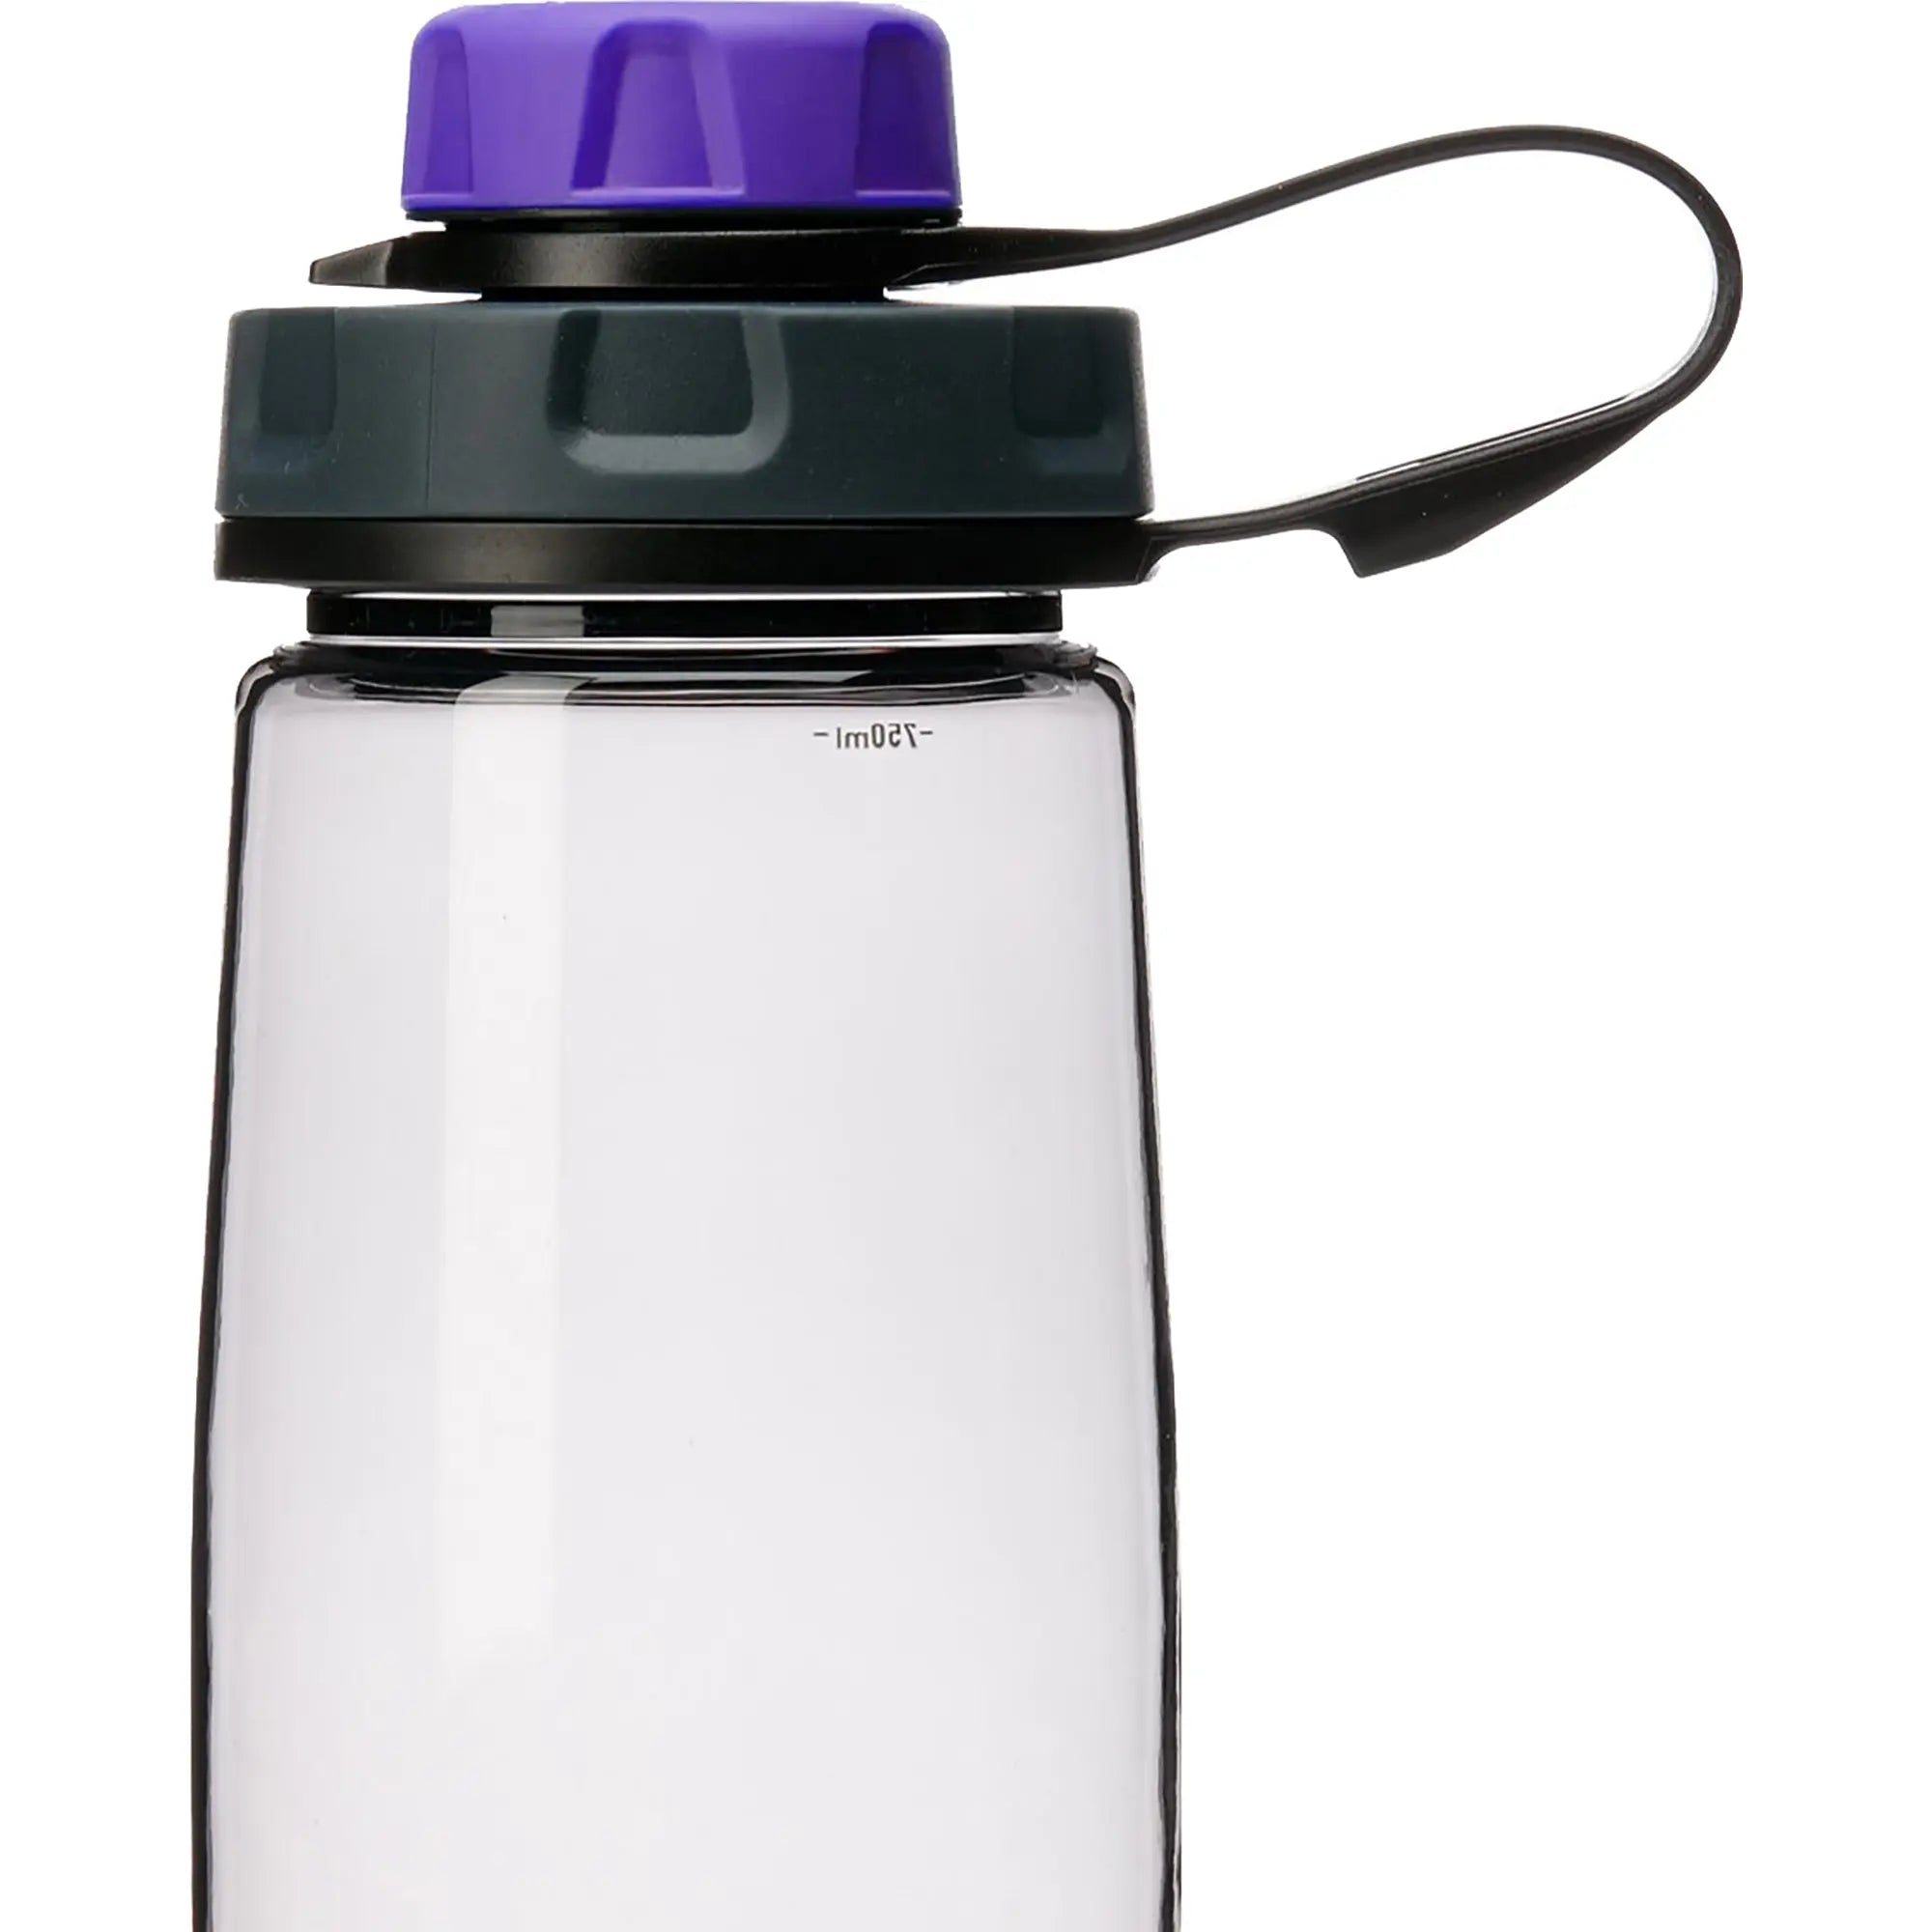 Humangear capCAP+ 63mm Universal Water Bottle Cap Humangear